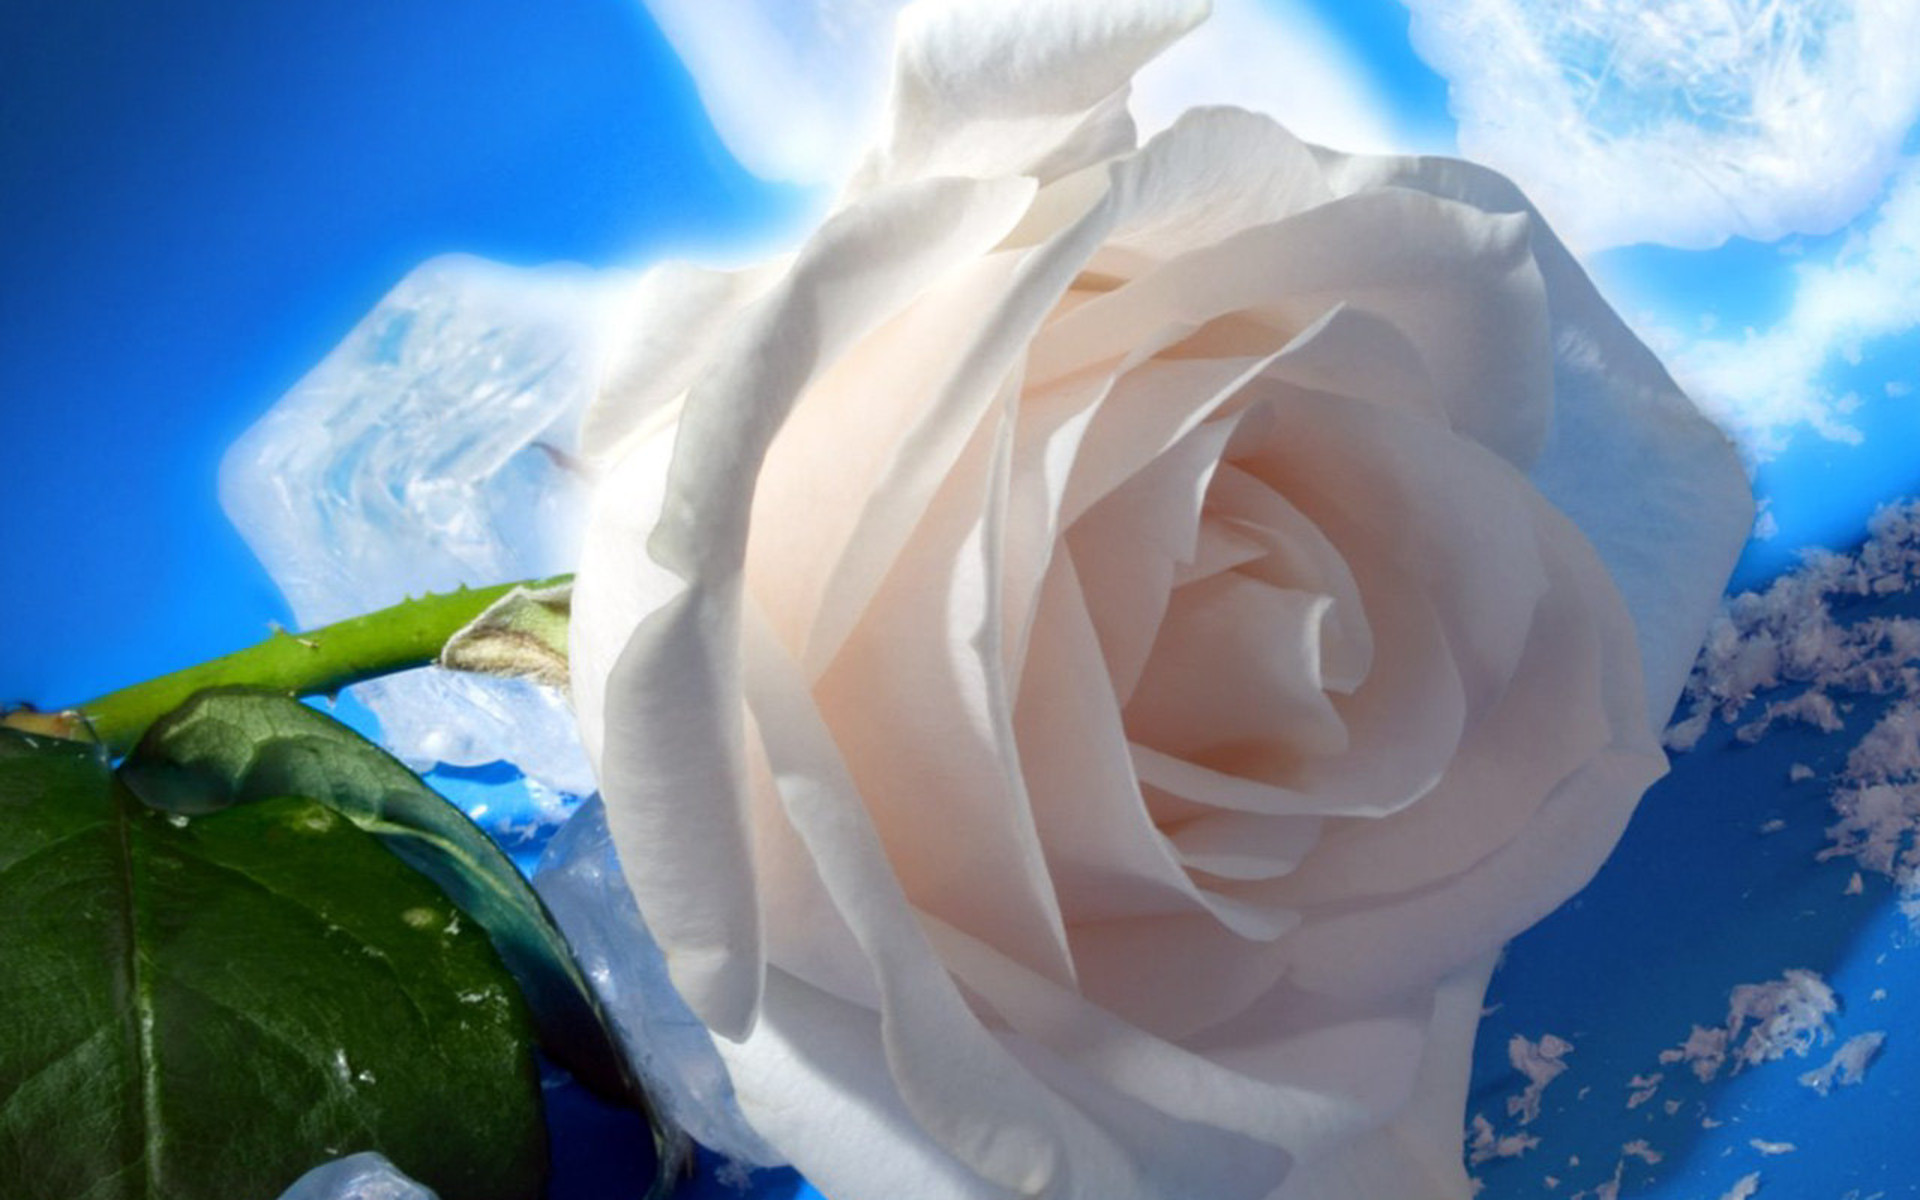 White-rose-hd-wallpaper-1080.jpg